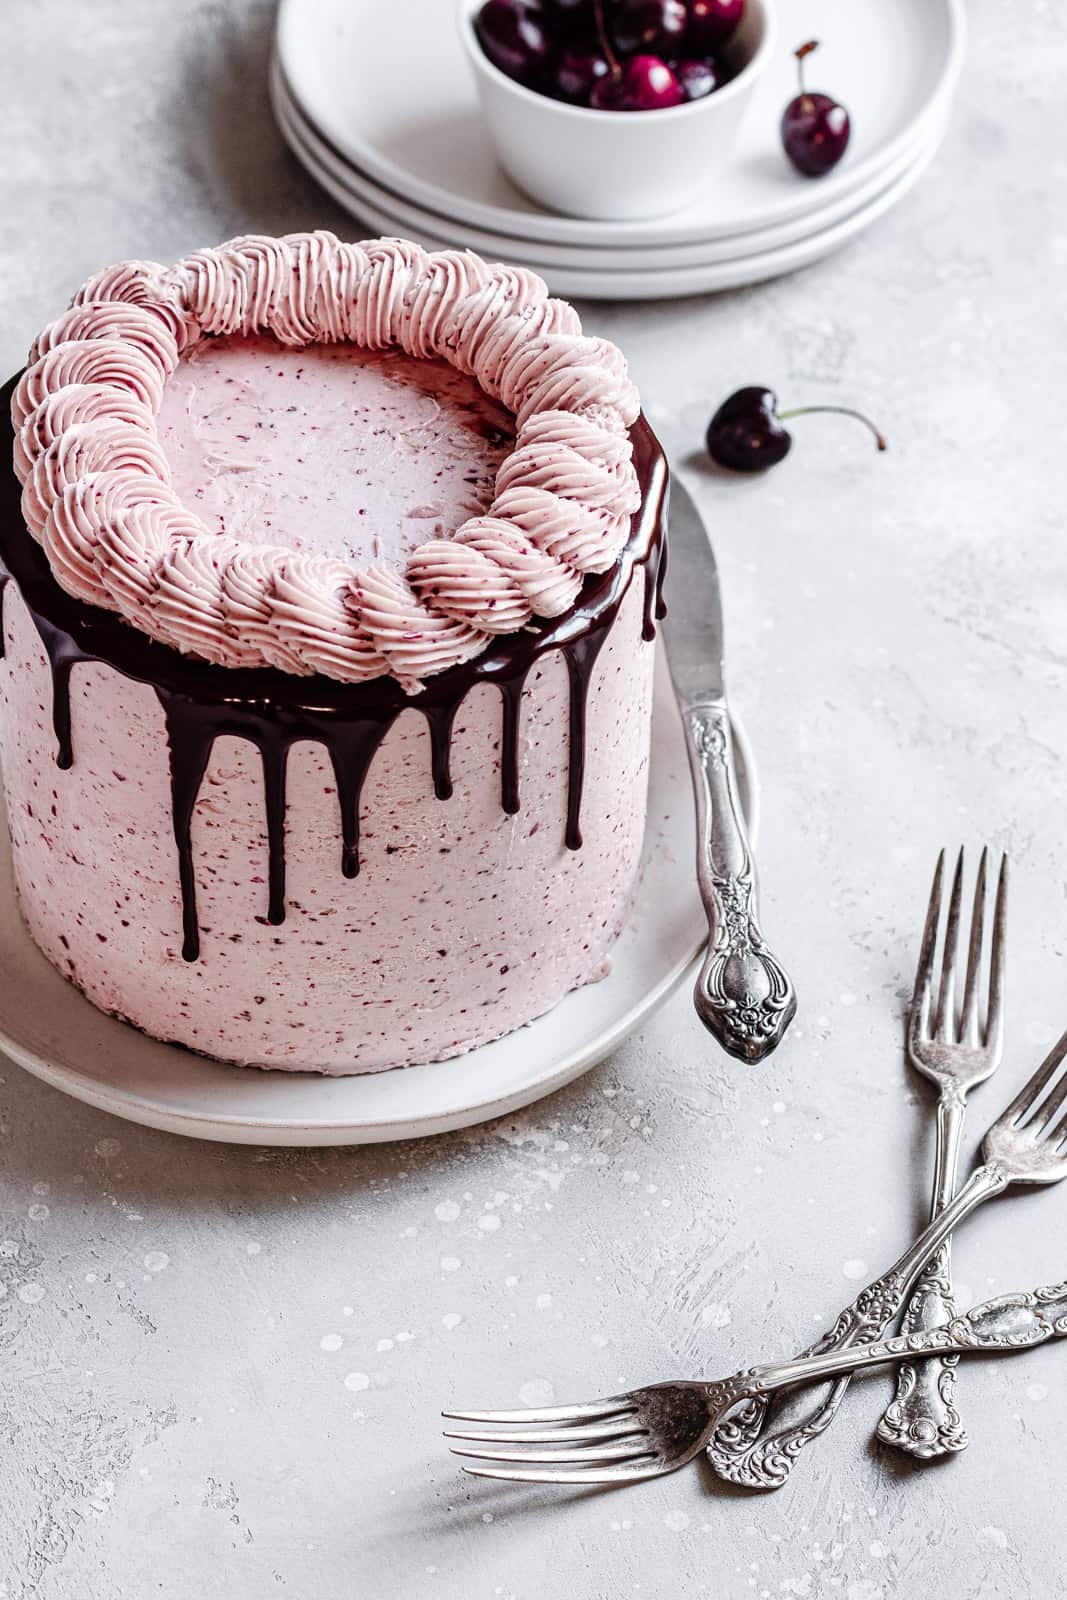 Chocolate cherry layer cake recipe